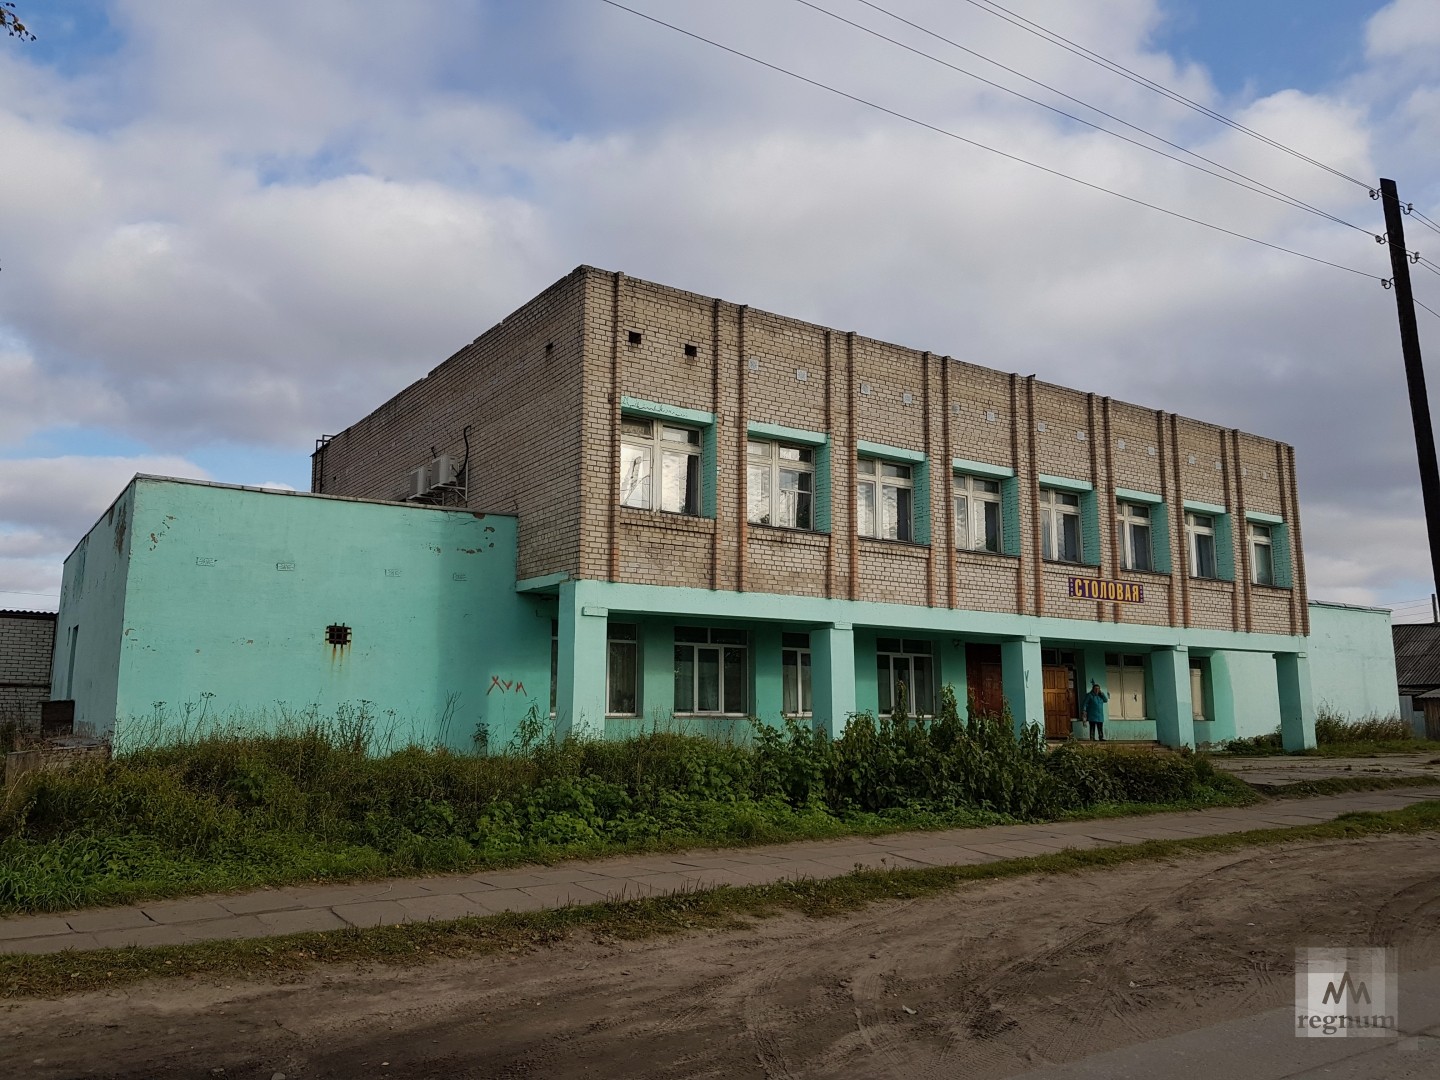 Советская эпоха в архитектуре Мезени прагматична — никаких архитектурных излишеств